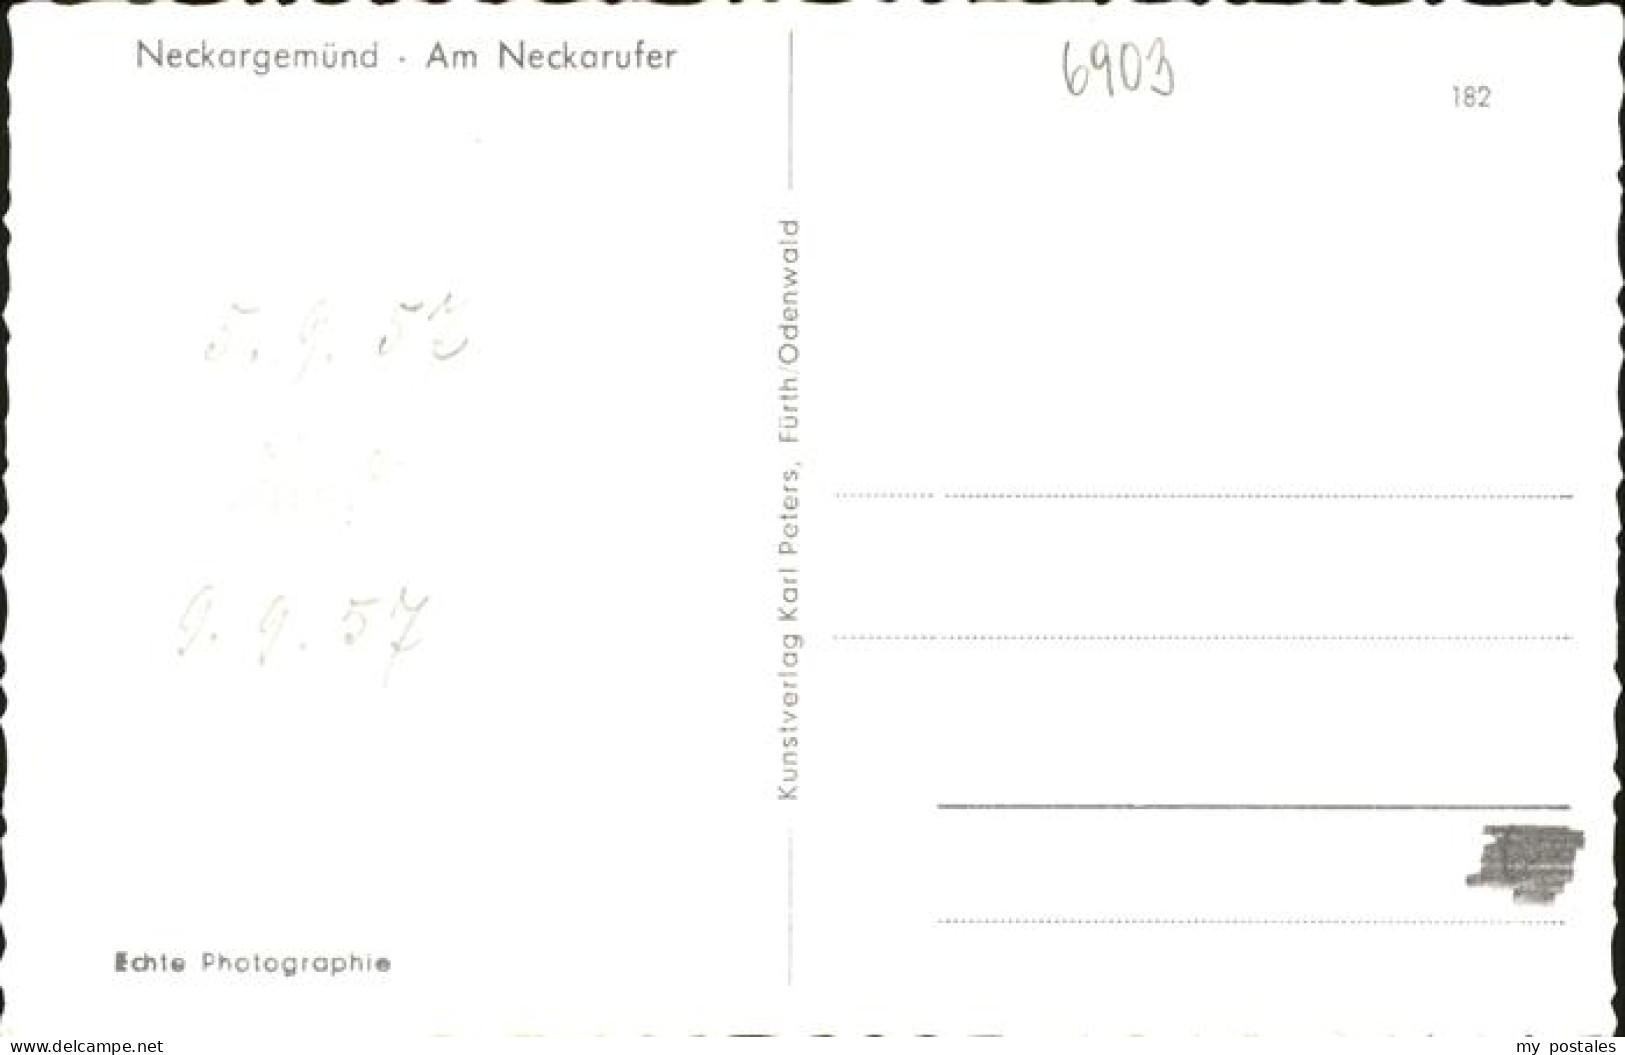 41258370 Neckargemuend Neckarufer Neckargemuend - Neckargemuend